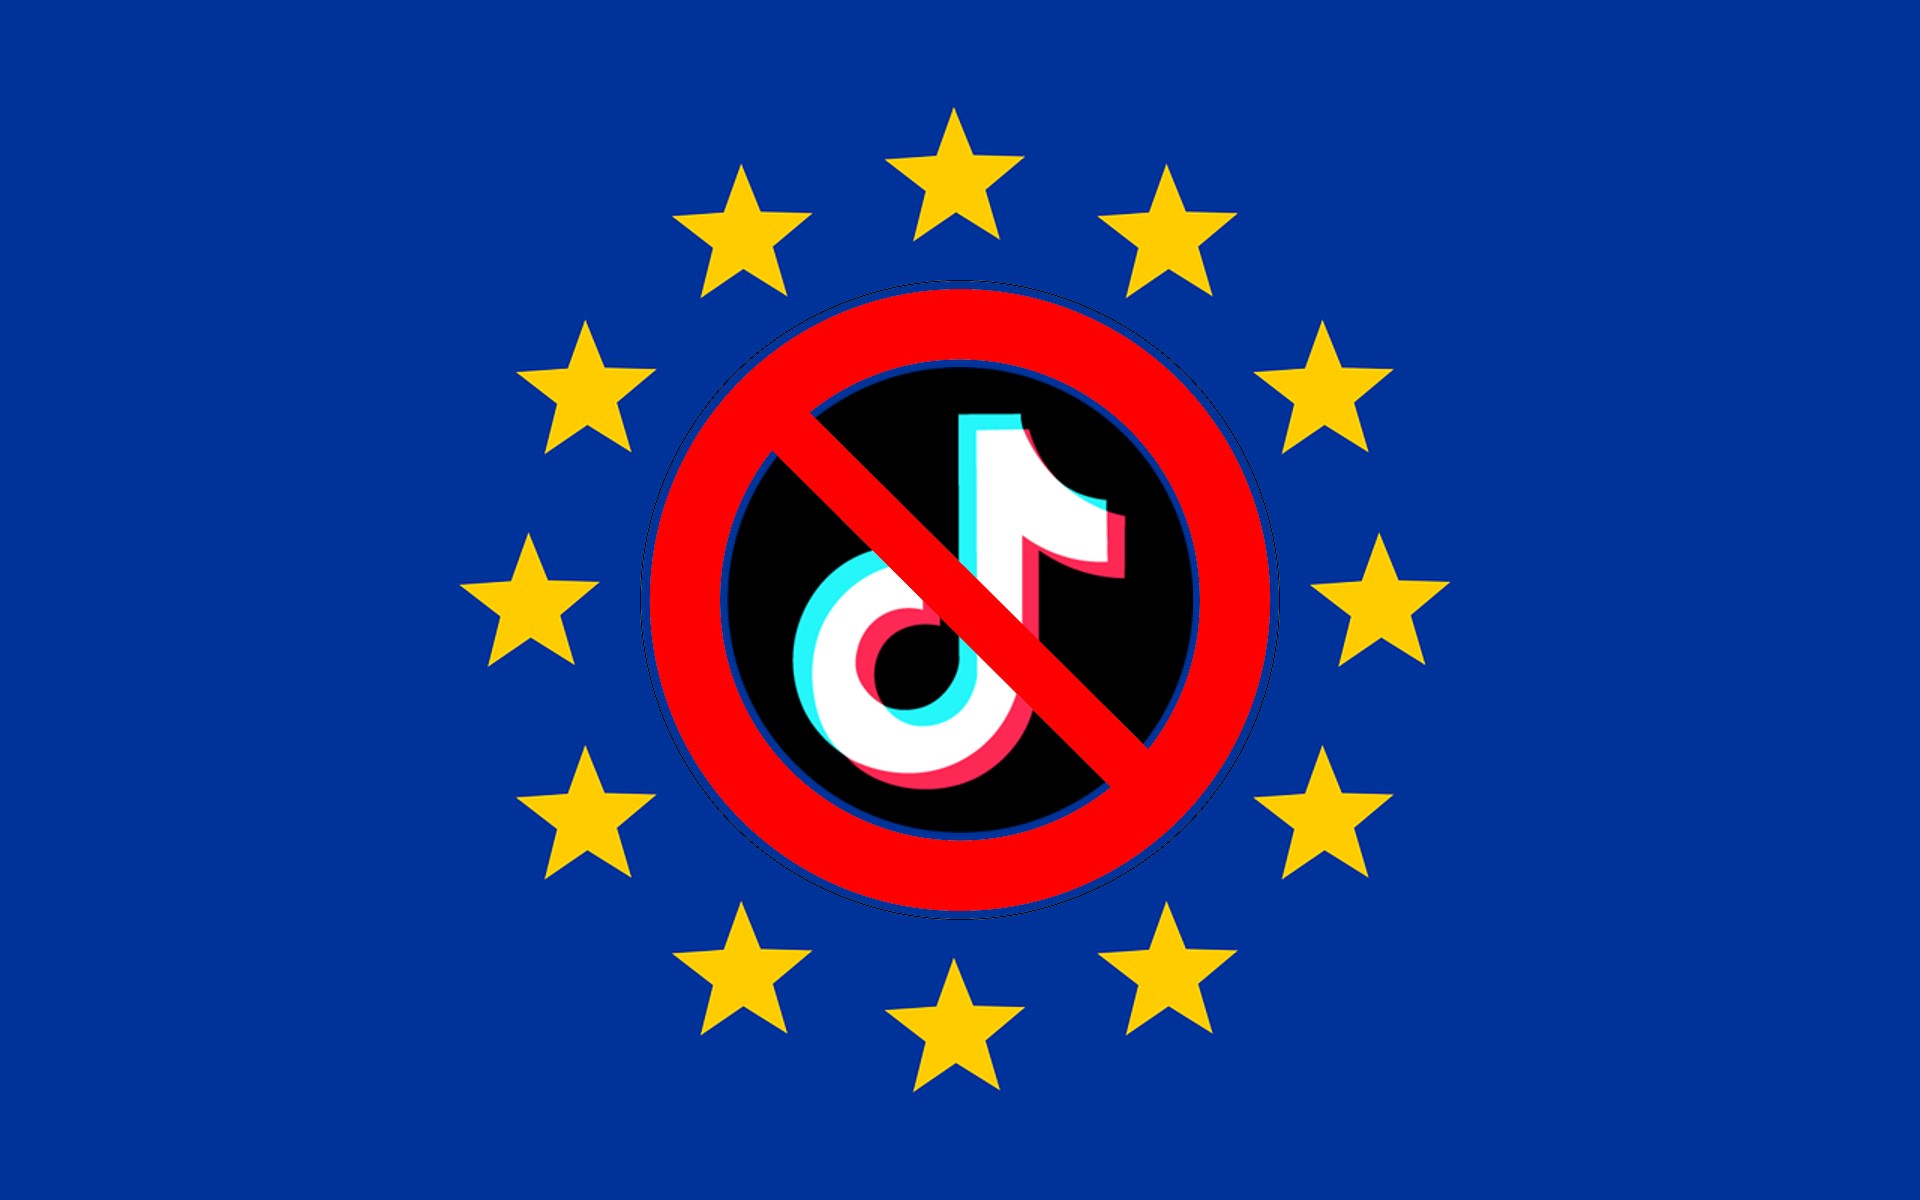 Adiós a TikTok: la UE prohíbe TikTok a sus trabajadores